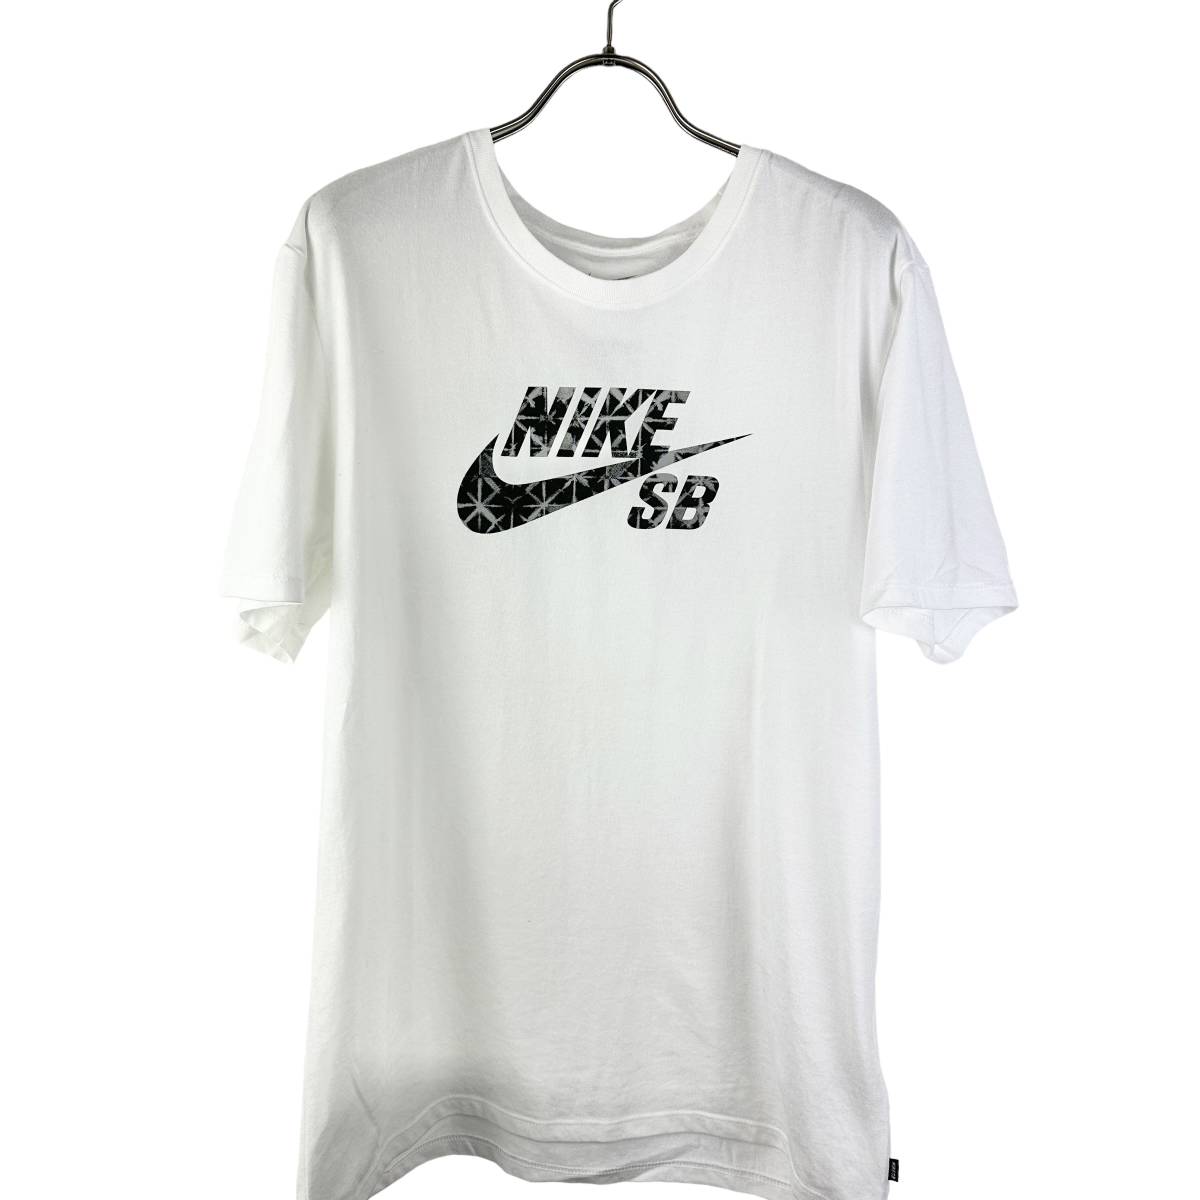 NIKE(ナイキ) SB LOGO T Shirt (white)